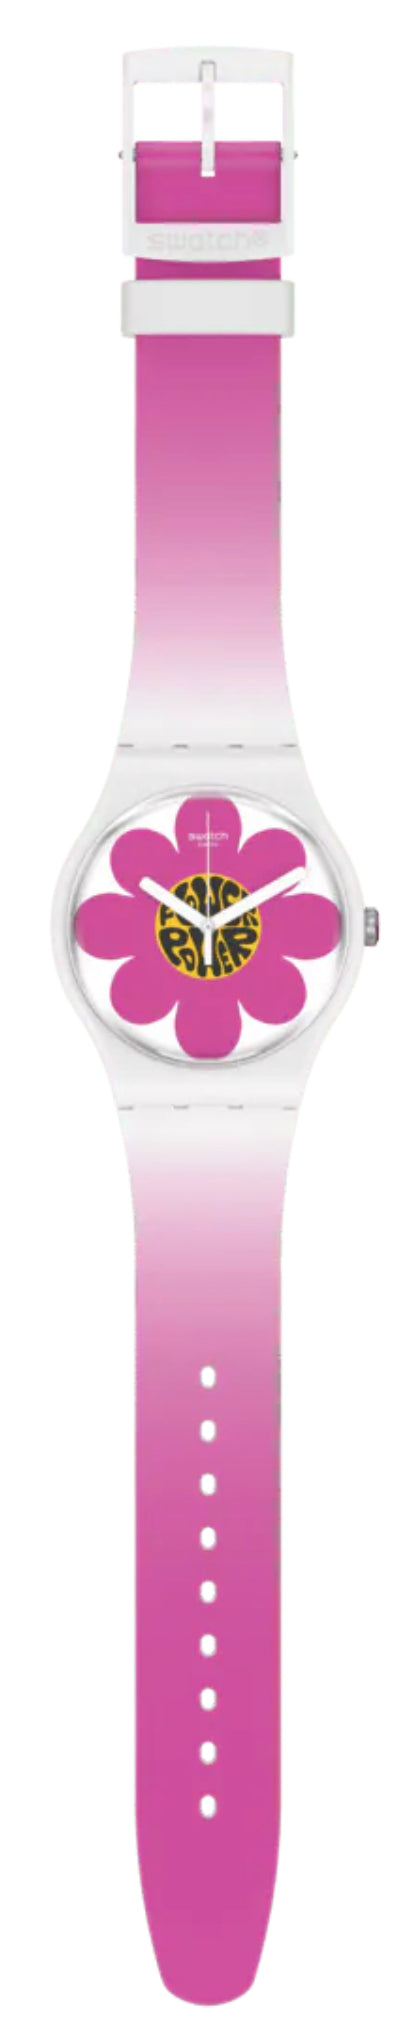 Swatch - Bioceramic Watch